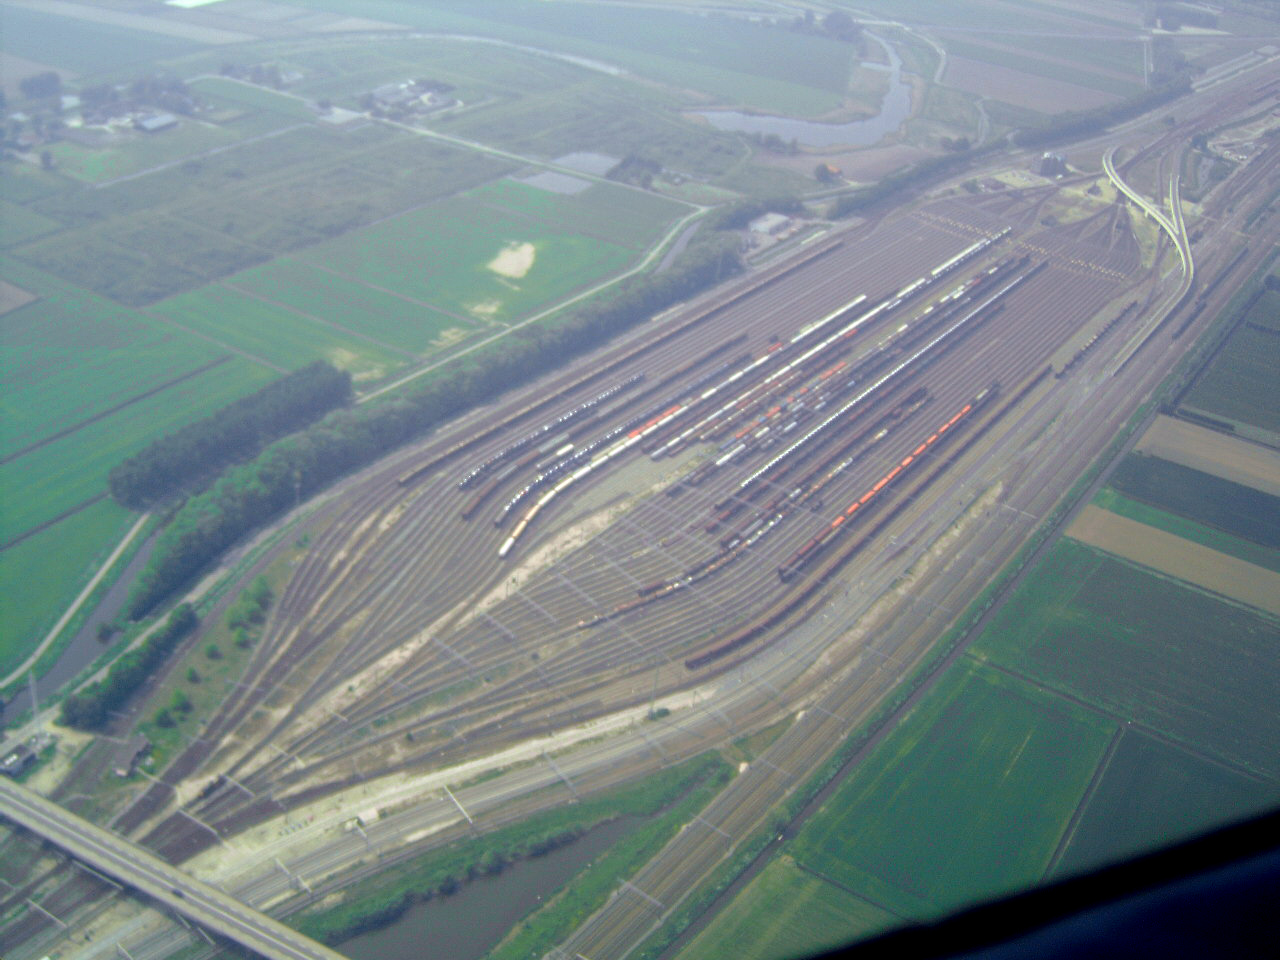 A hollandiai Kijfhoek rendezőpályaudvara műszaki gondok miatt napokra leállt, emiatt is késésekre számít a DB Cargo a Németország és Hollandia közti vasúti árufuvarozásban (kép forrása: Wikipedia)